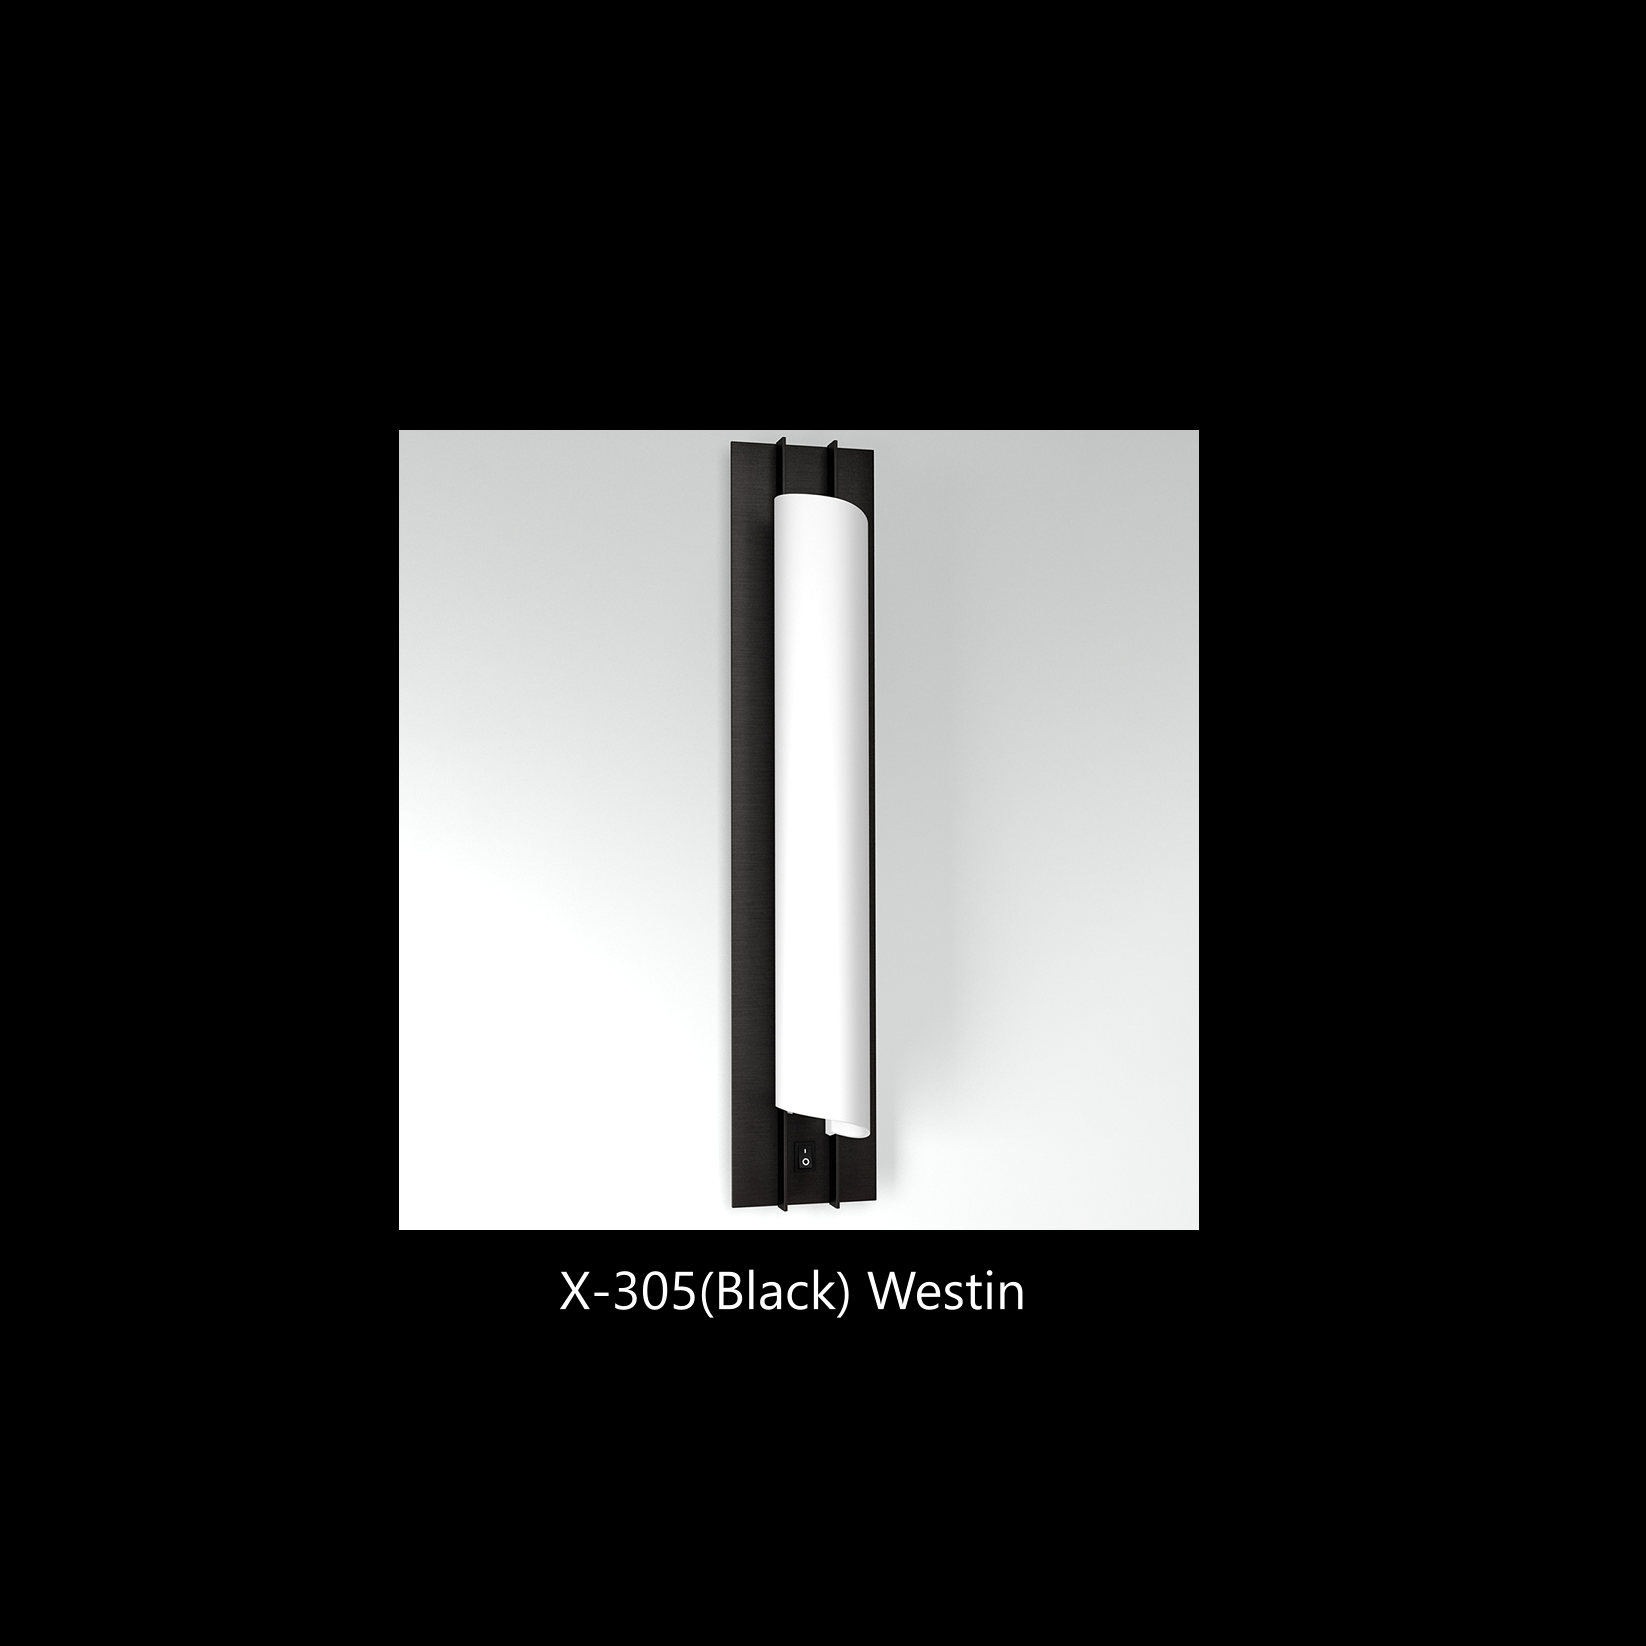 X-305(Black) Westin